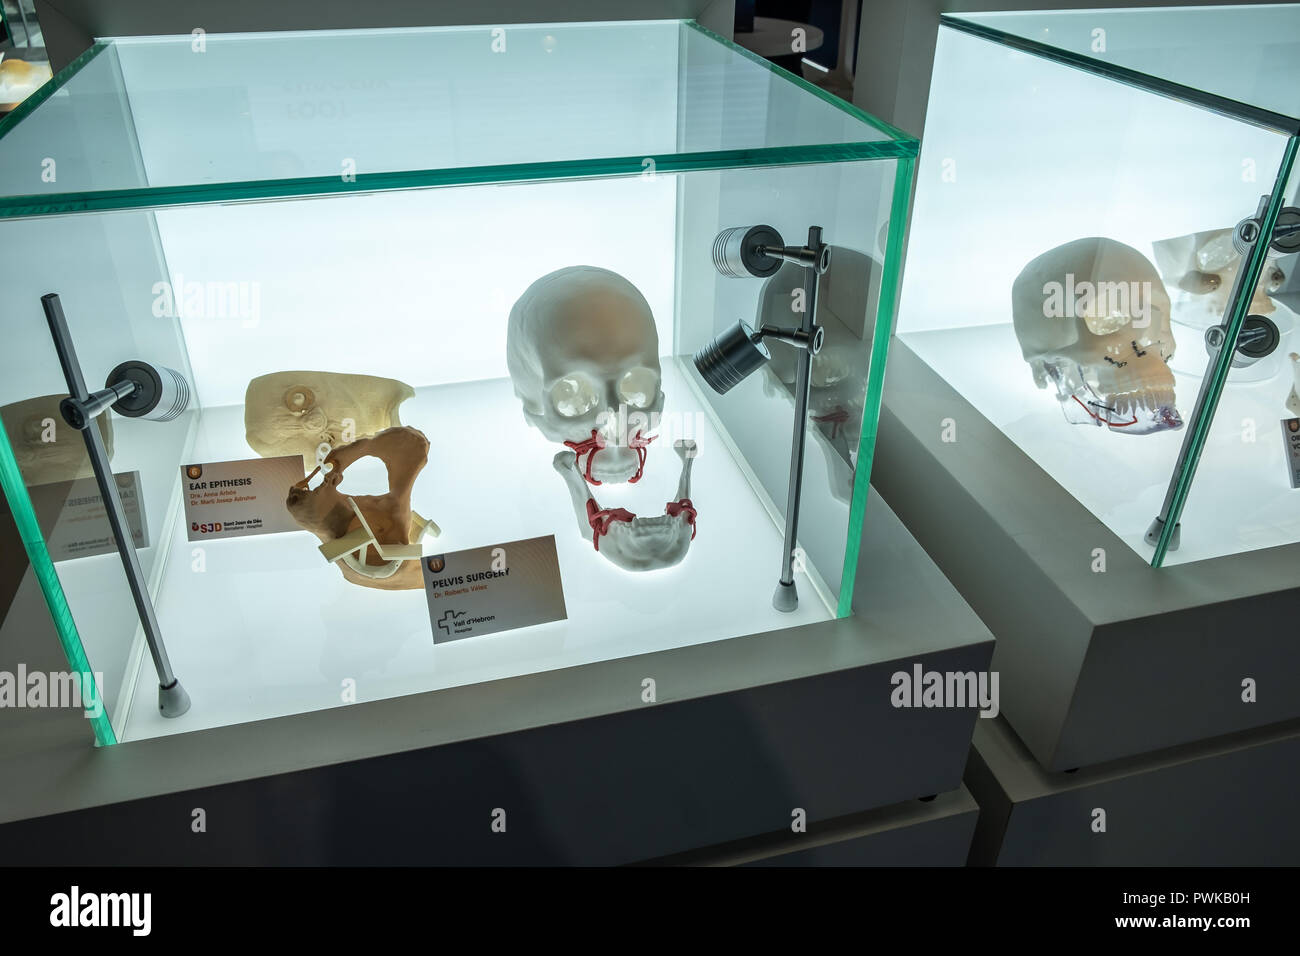 Digitale Modelle der menschlichen Anatomie von Avinent sind während der Veranstaltung gesehen. Feria de Barcelona Gastgeber der dritten Ausgabe des (3D) Industrie Woche. Ziel ist es, den Einsatz von Technologien und Branchen, wie Robotik, Formen und Matrizen, neue Materialien und 3D-Druck zu beschleunigen. Stockfoto